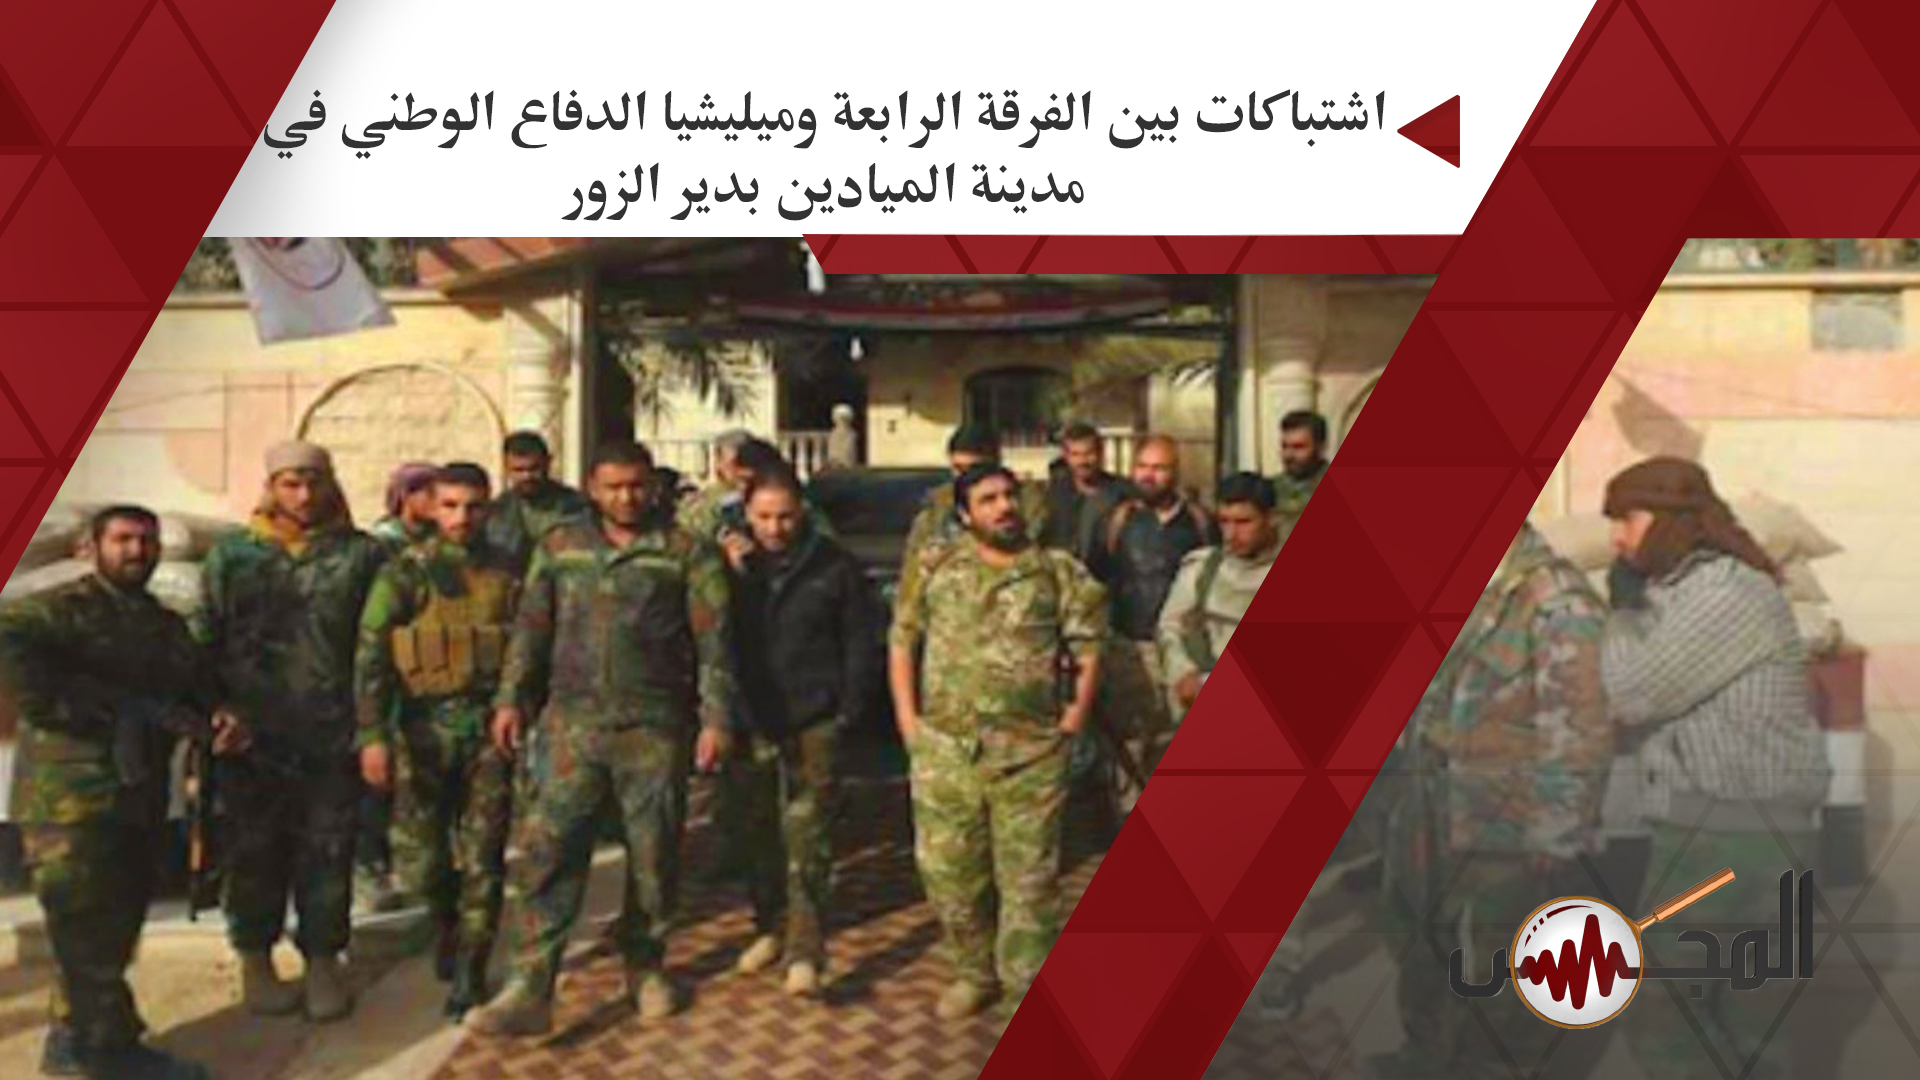 اشتباكات بين الفرقة الرابعة وميليشيا الدفاع الوطني في مدينة الميادين بدير الزور